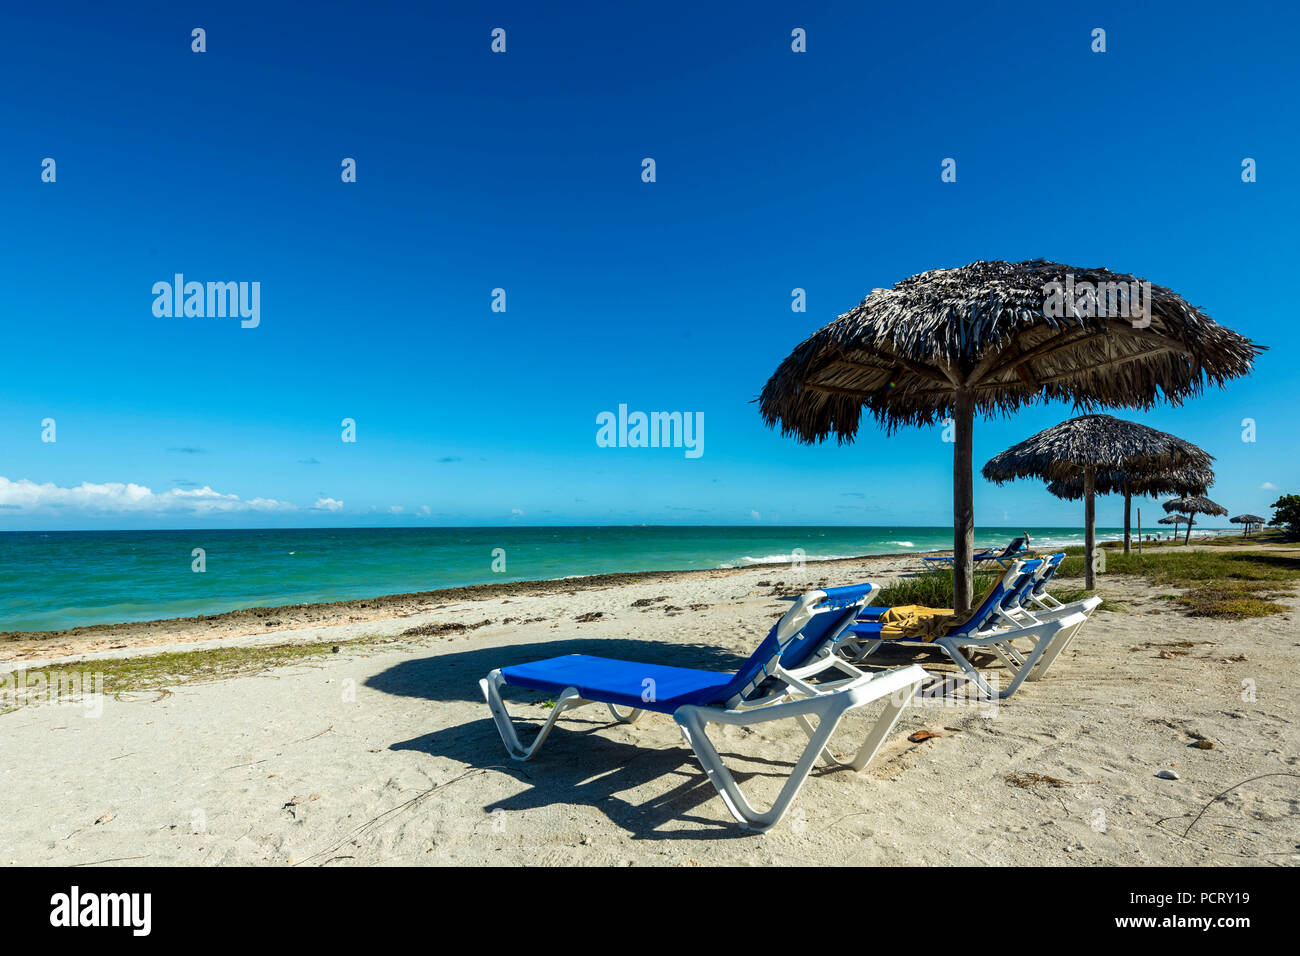 Des chaises longues à la plage, parasols faits de feuilles de palmiers, la plage de l'hôtel le matin Resort & Spa Paradisus Varadero Varadero, eaux turquoise, sable fin, Cuba, Matanzas, Cuba, Amérique du Nord Banque D'Images